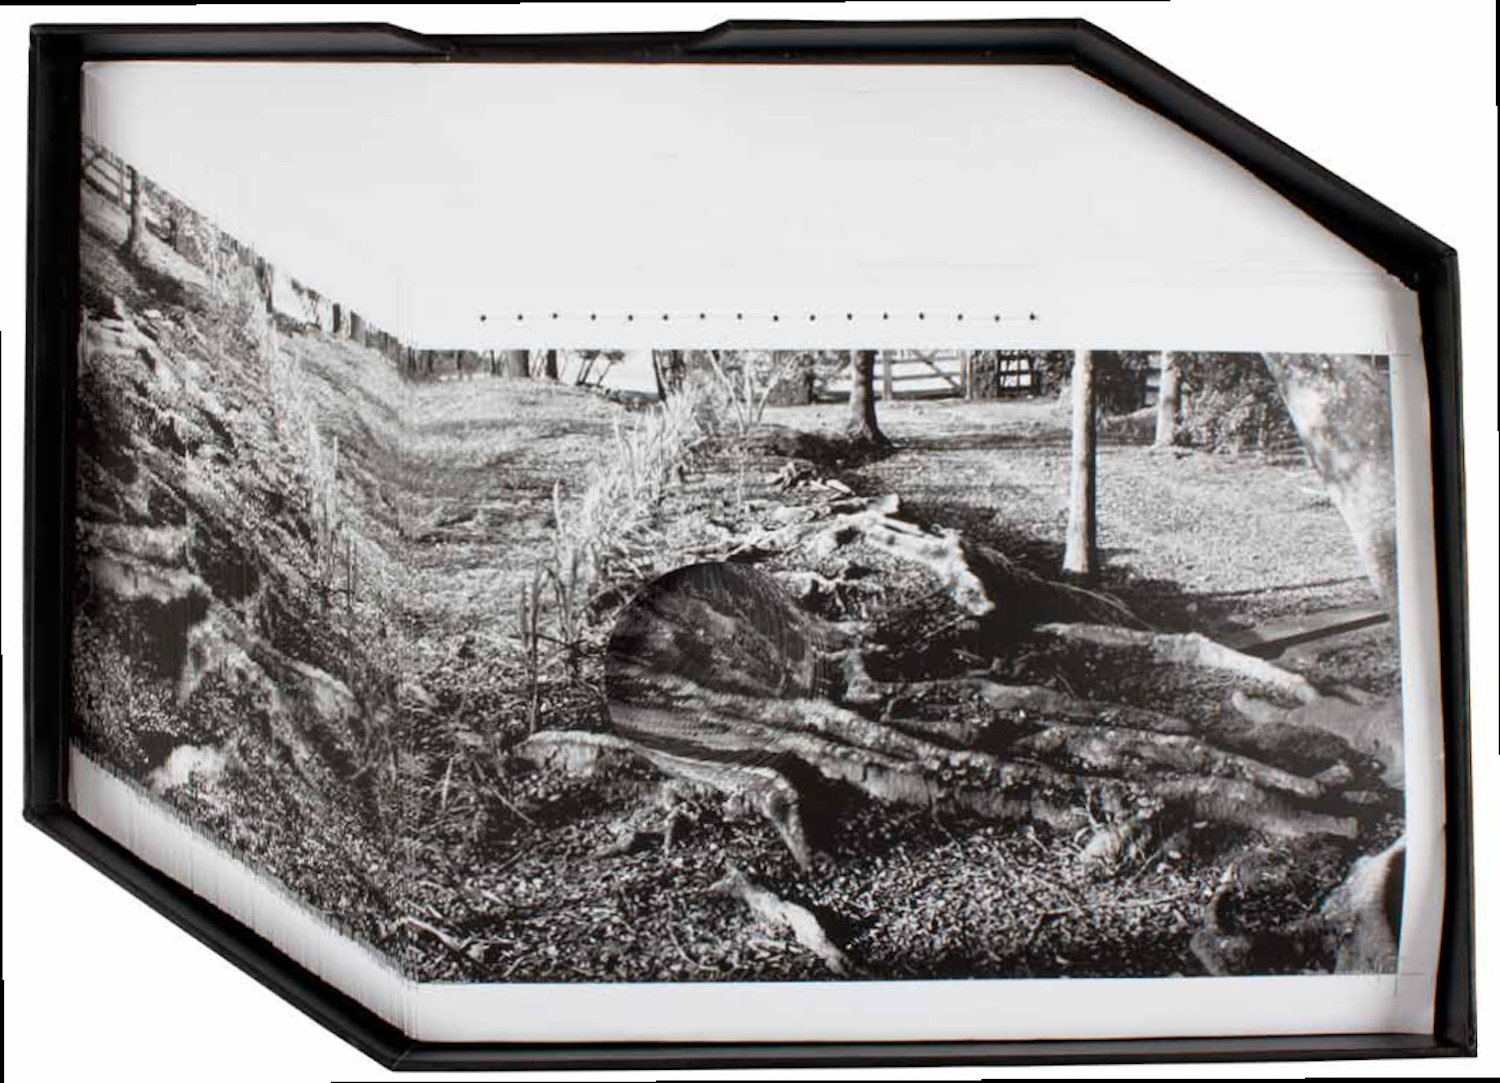 Raízes, de Lucia Mindlin Loeb, 2008. Sulfite impresso e costurado em caixa de papelão forrado, 29 x 40 x 3,5 cm. Coleção de Fotografia Contemporânea / Acervo IMS  